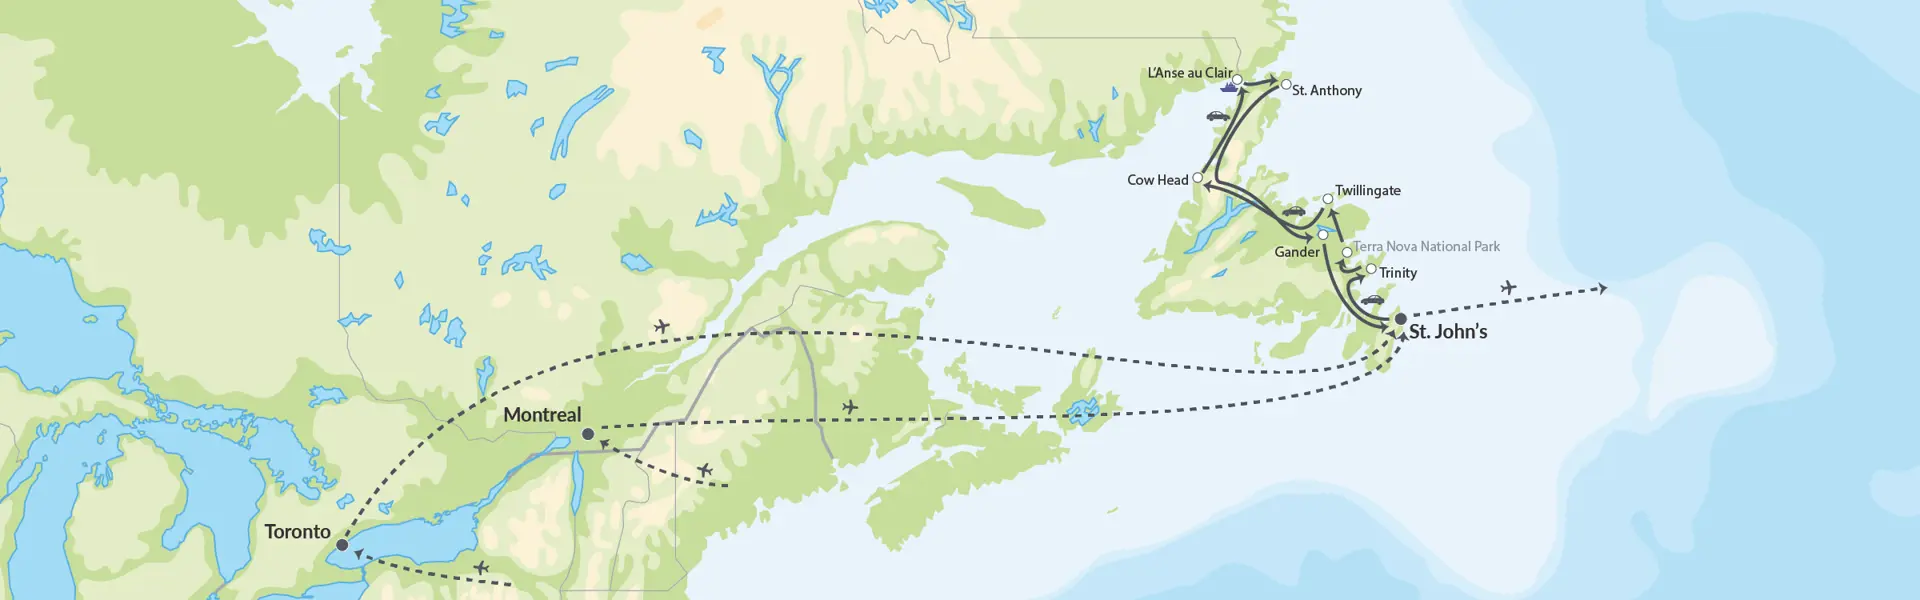 111158 Newfoundland Og Labrador Explorer Map